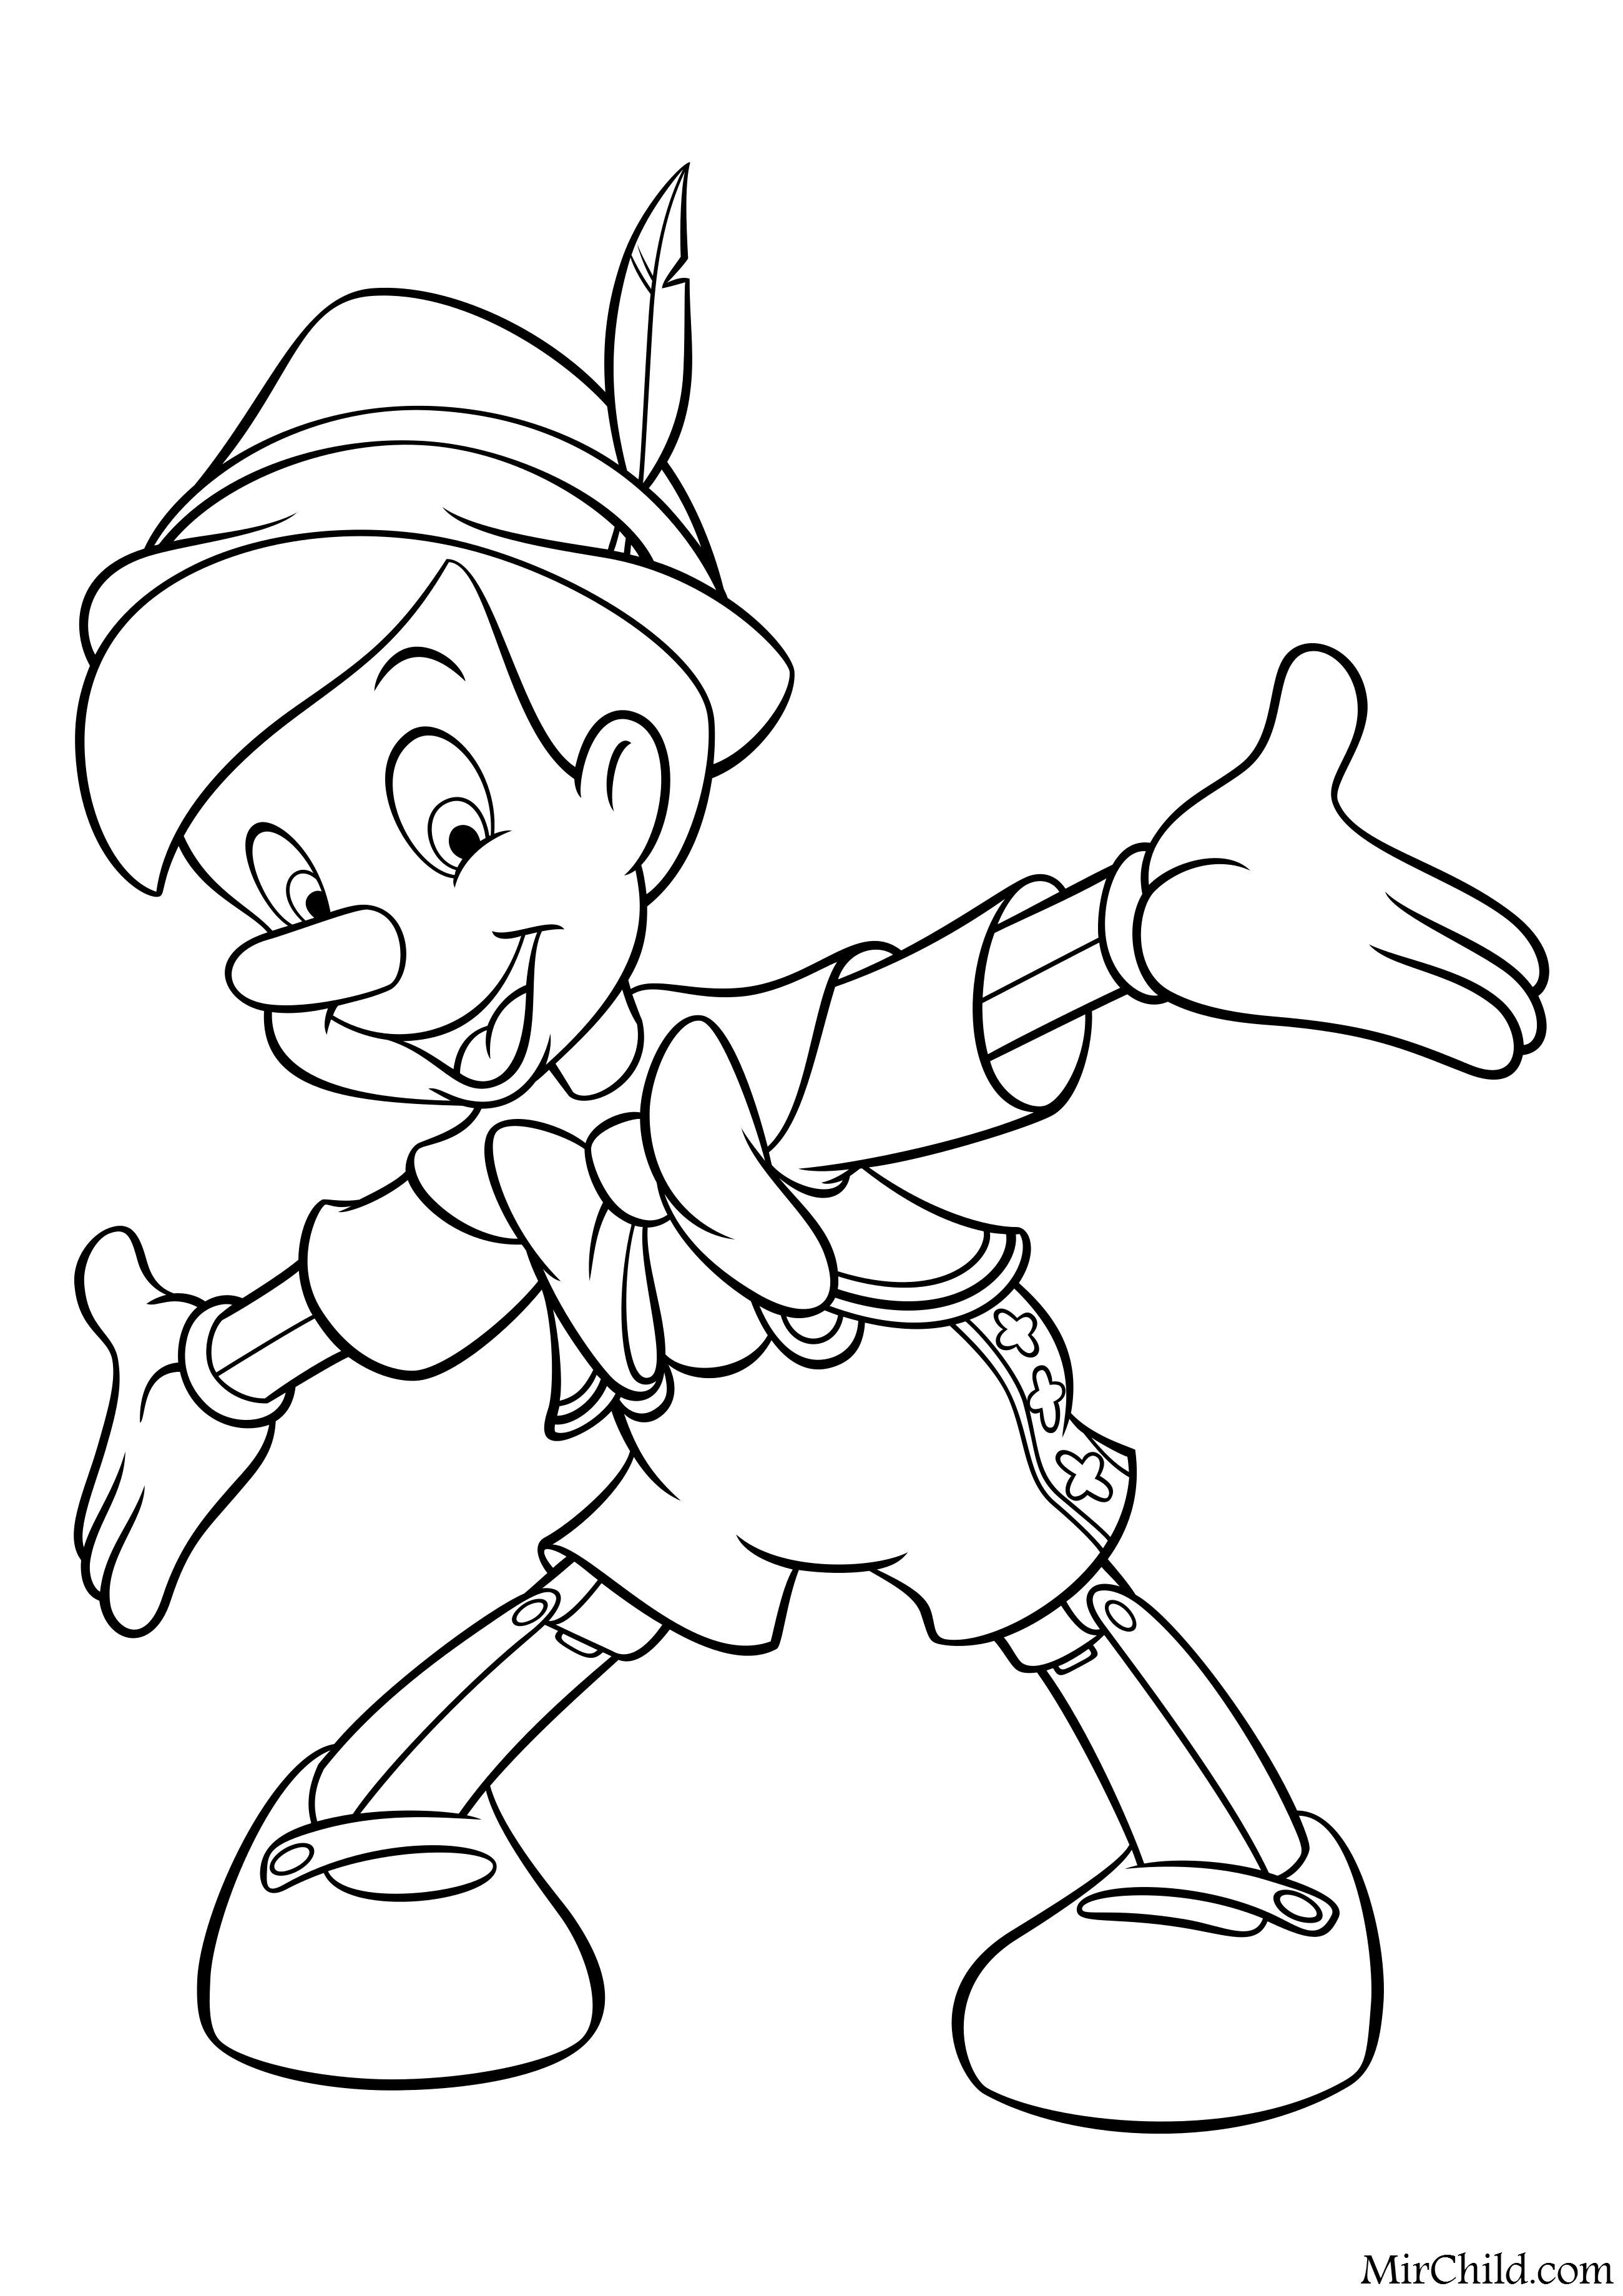 Пиноккио раскраска для детей